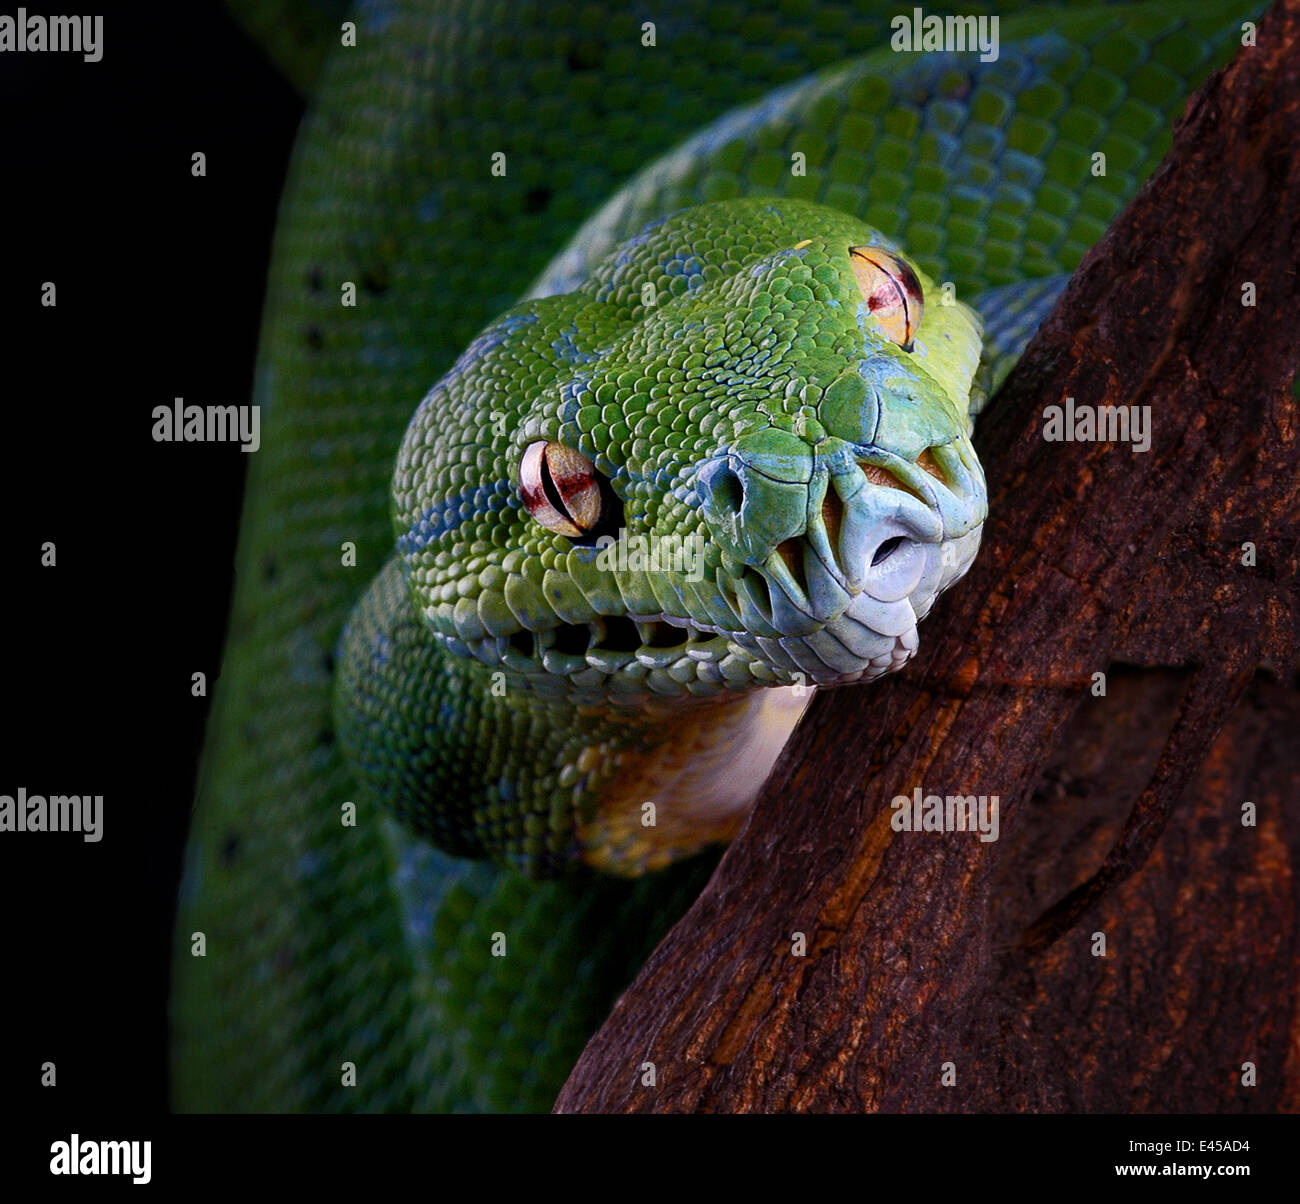 Arbre vert serpent Python / Chondopython {Morelia viridis} portrait, captive, se produit la Papouasie-Nouvelle-Guinée et en Indonésie Banque D'Images